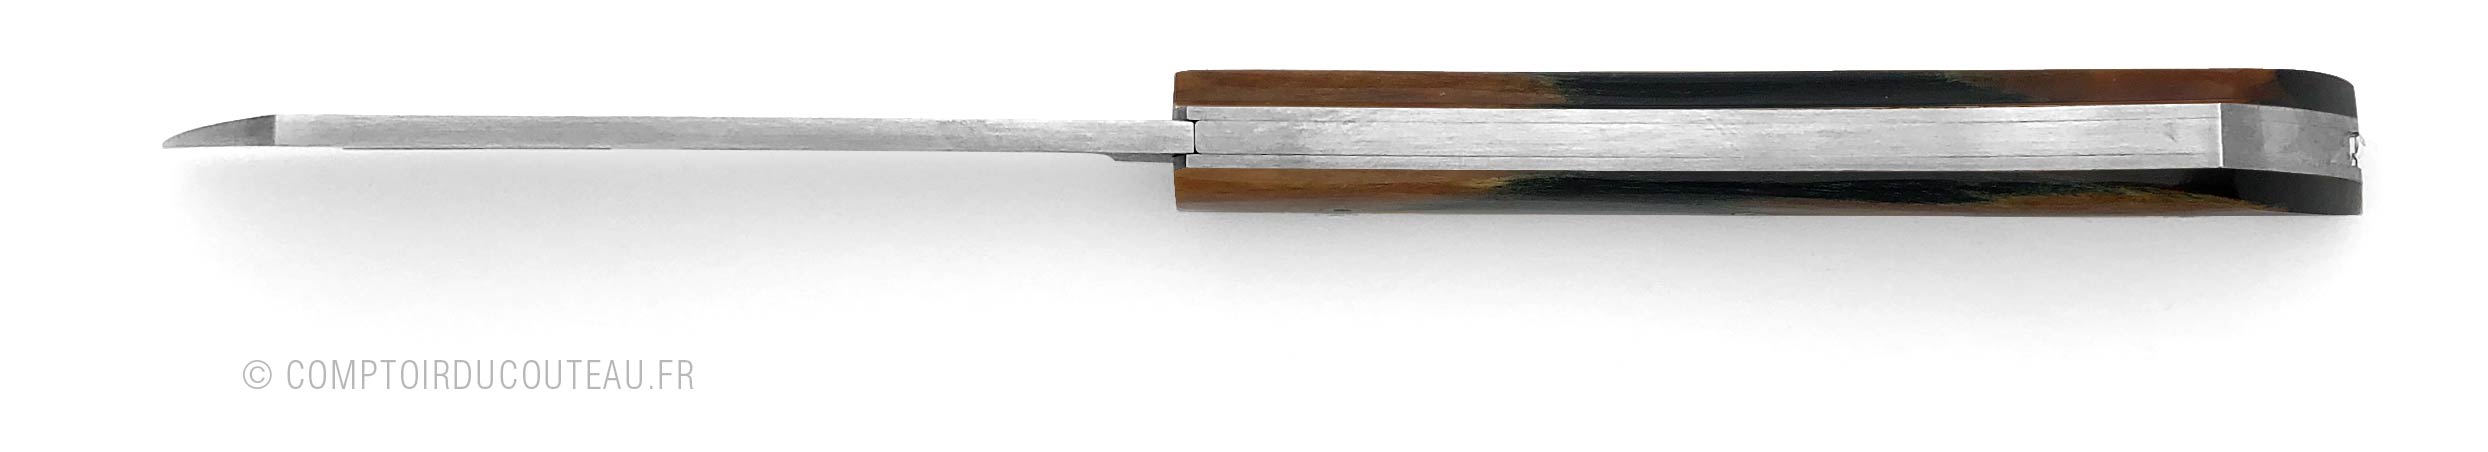 couteau de poche artisanal arca andrea bois de HETRE vue dessus